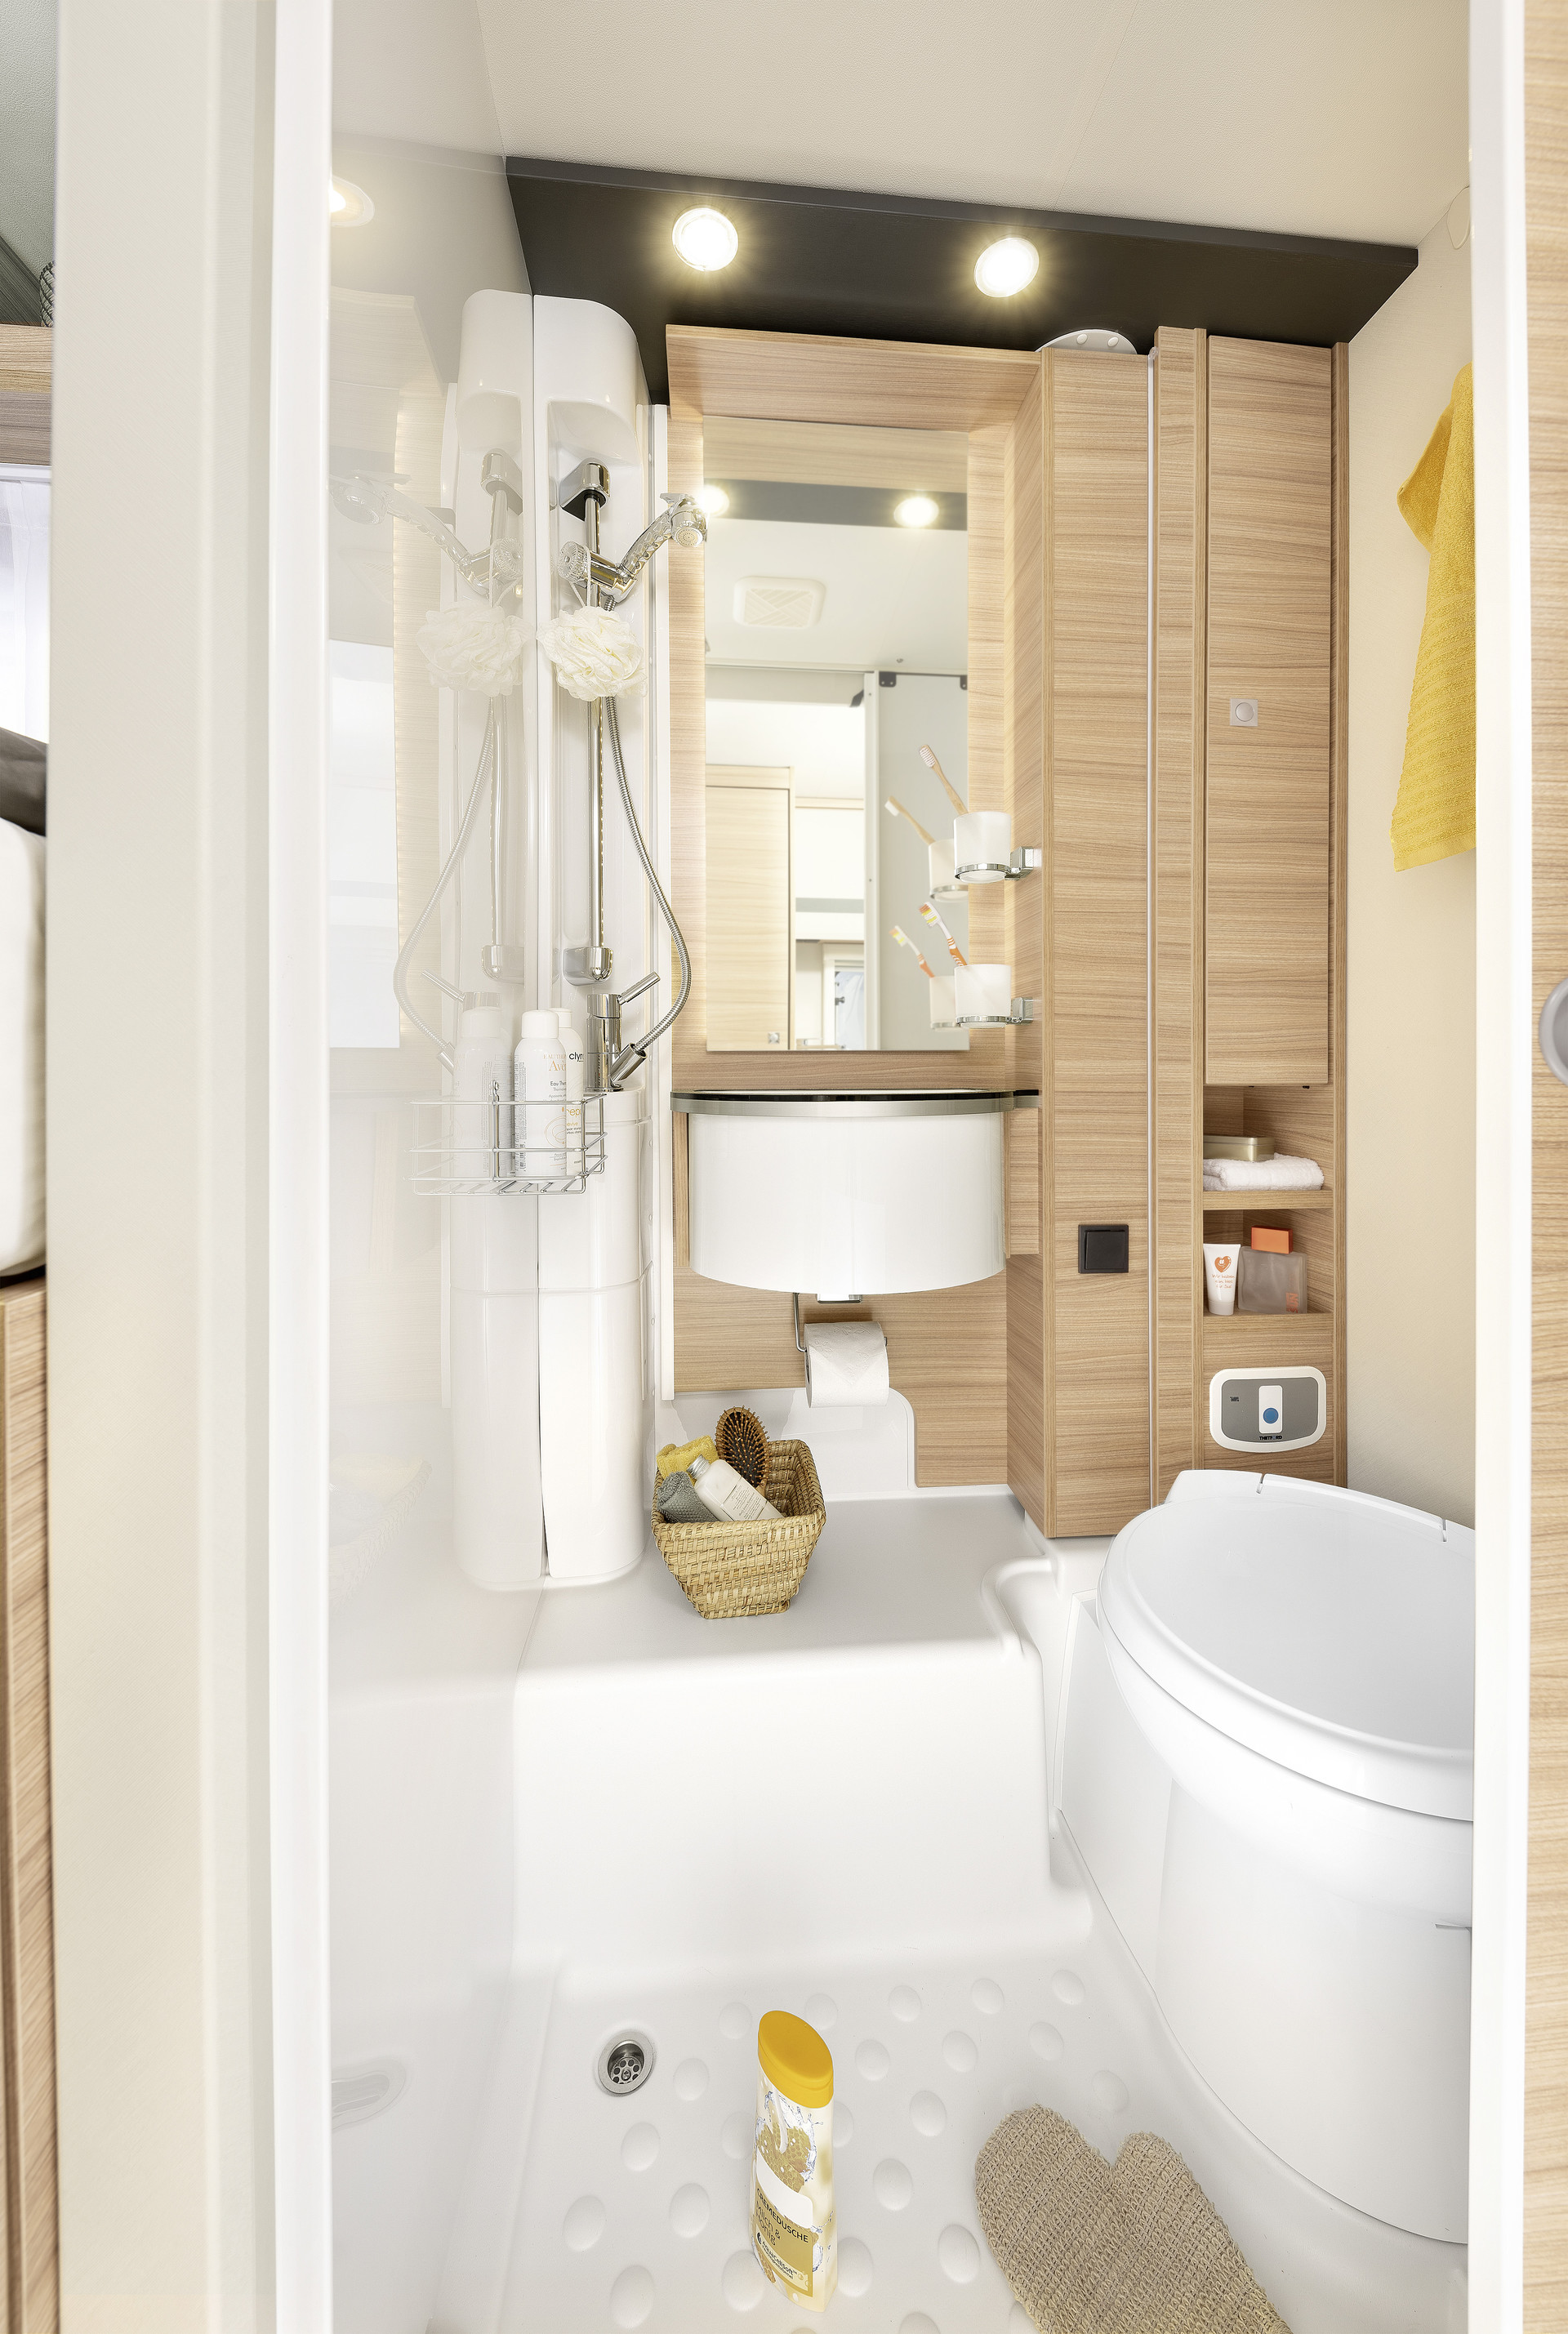 Model T / I 6 oferuje obszerną, osobną kabinę prysznicową, dobrze dostępną umywalkę oraz dużą przestrzeń do przechowywania • T/I 6